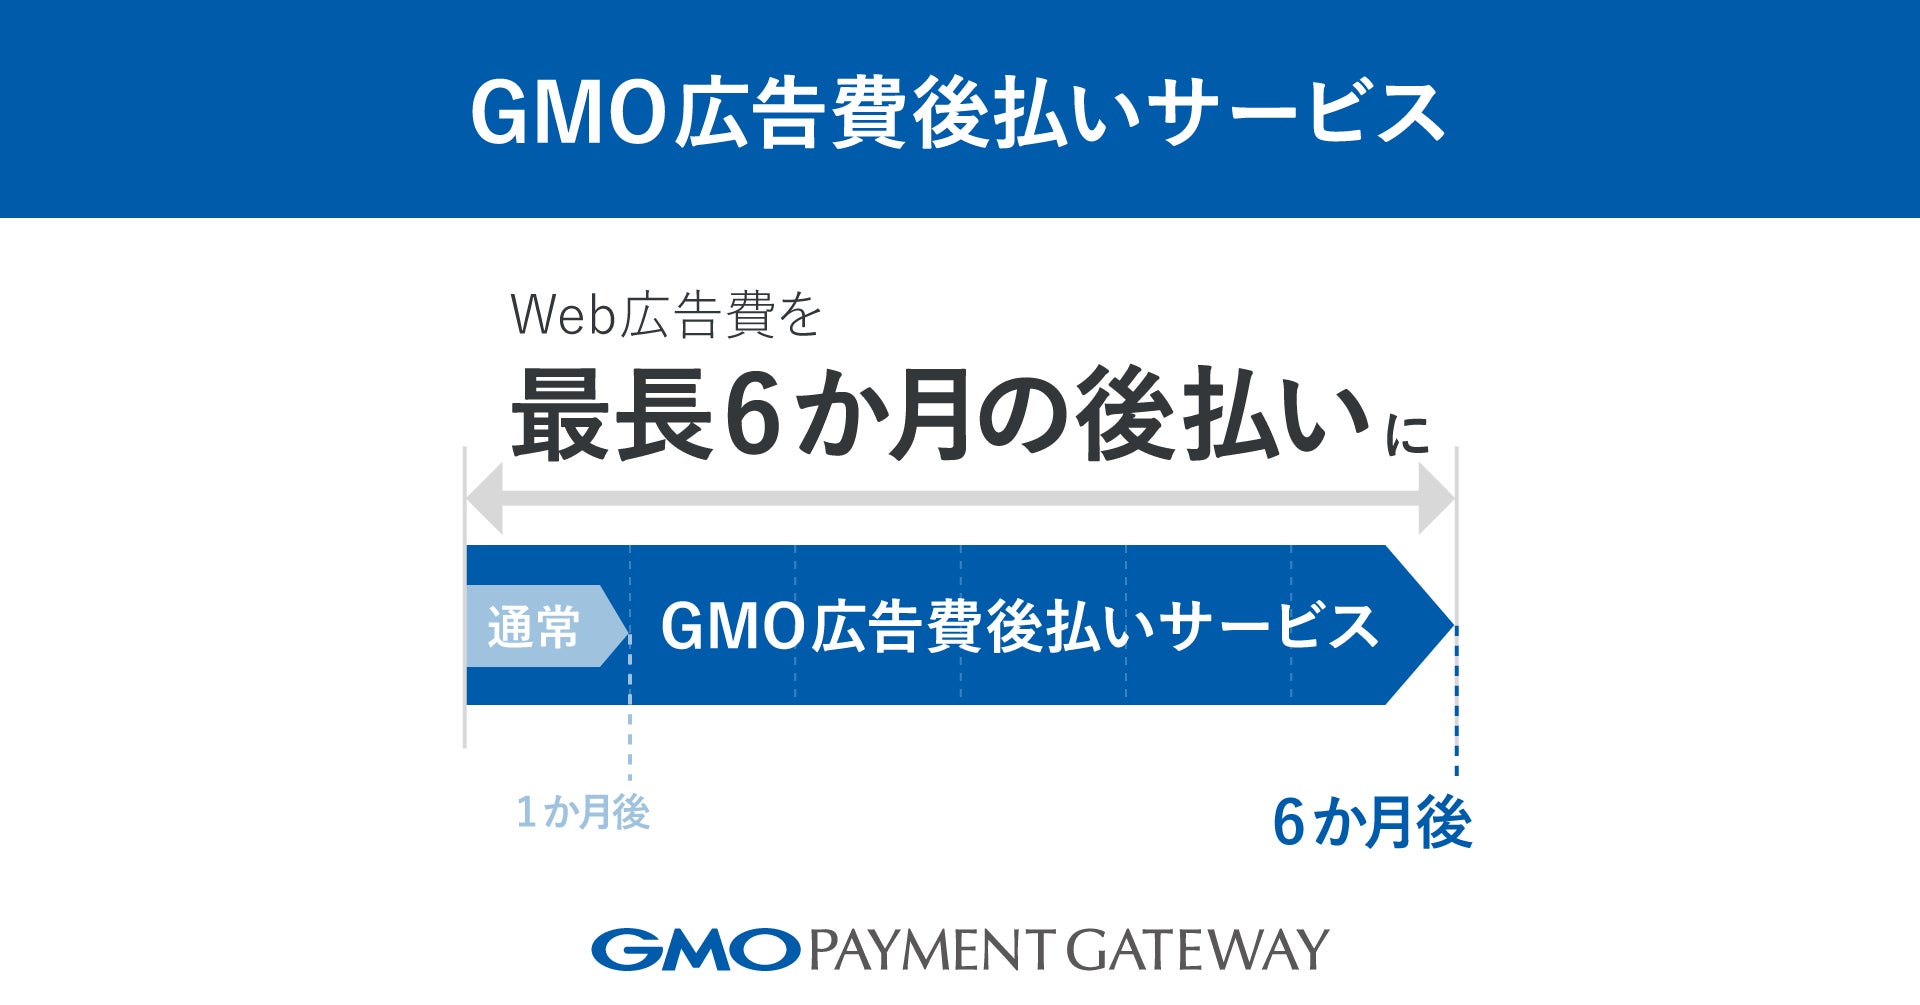 Web広告費を最長6か月の後払いにする「GMO広告費後払いサービス」を提供開始【GMOペイメントゲートウェイ】